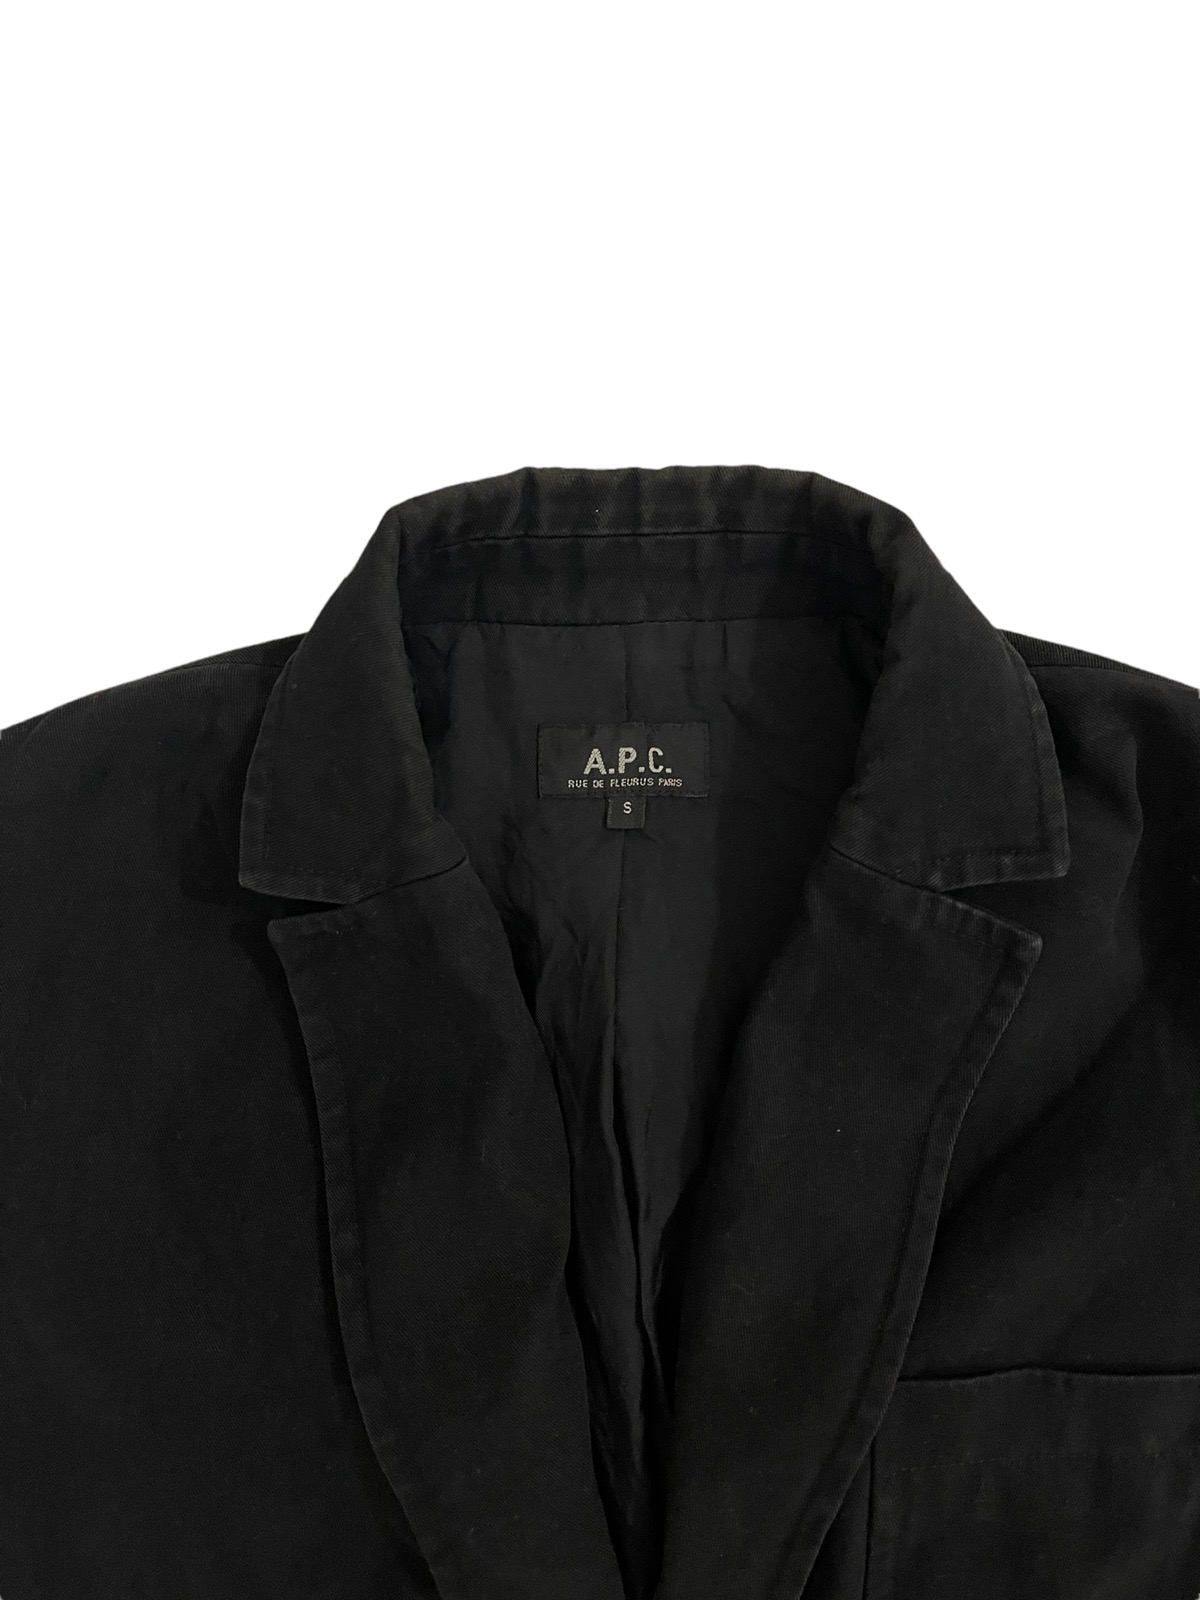 apc jacket - 7